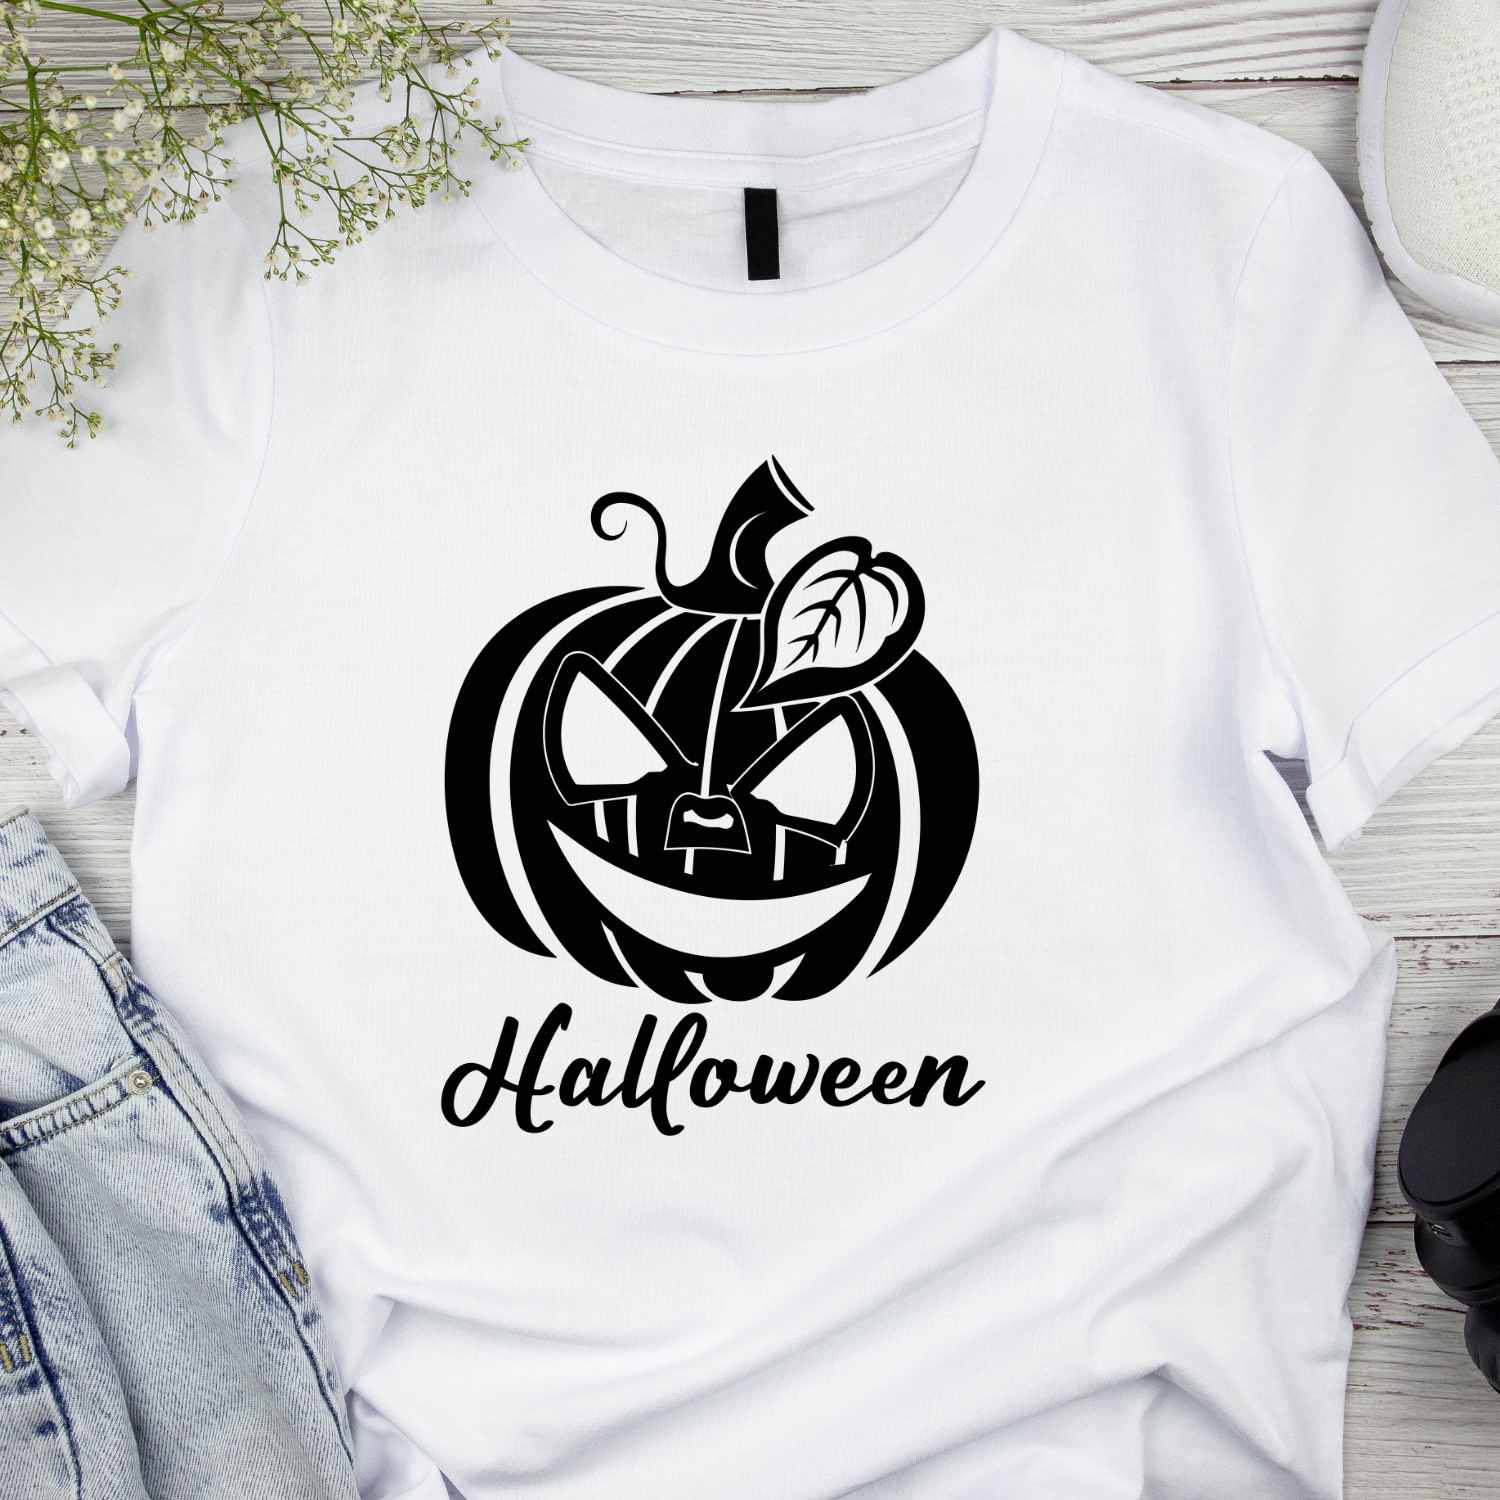 Halloween Funny Pumpkin T-shirt Design